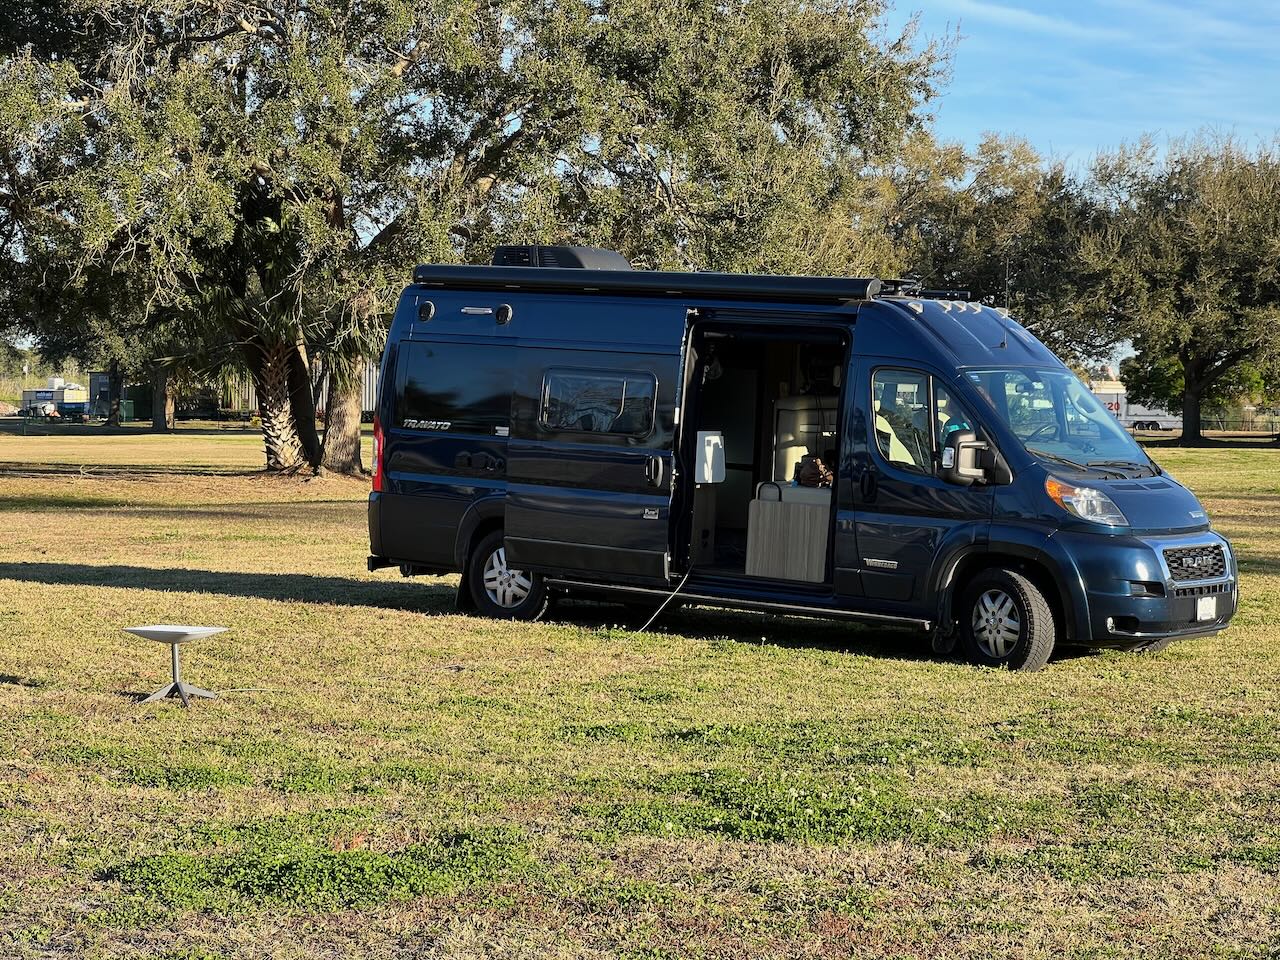 Iridium e-V24: Full E-Transit-Camper in Serie